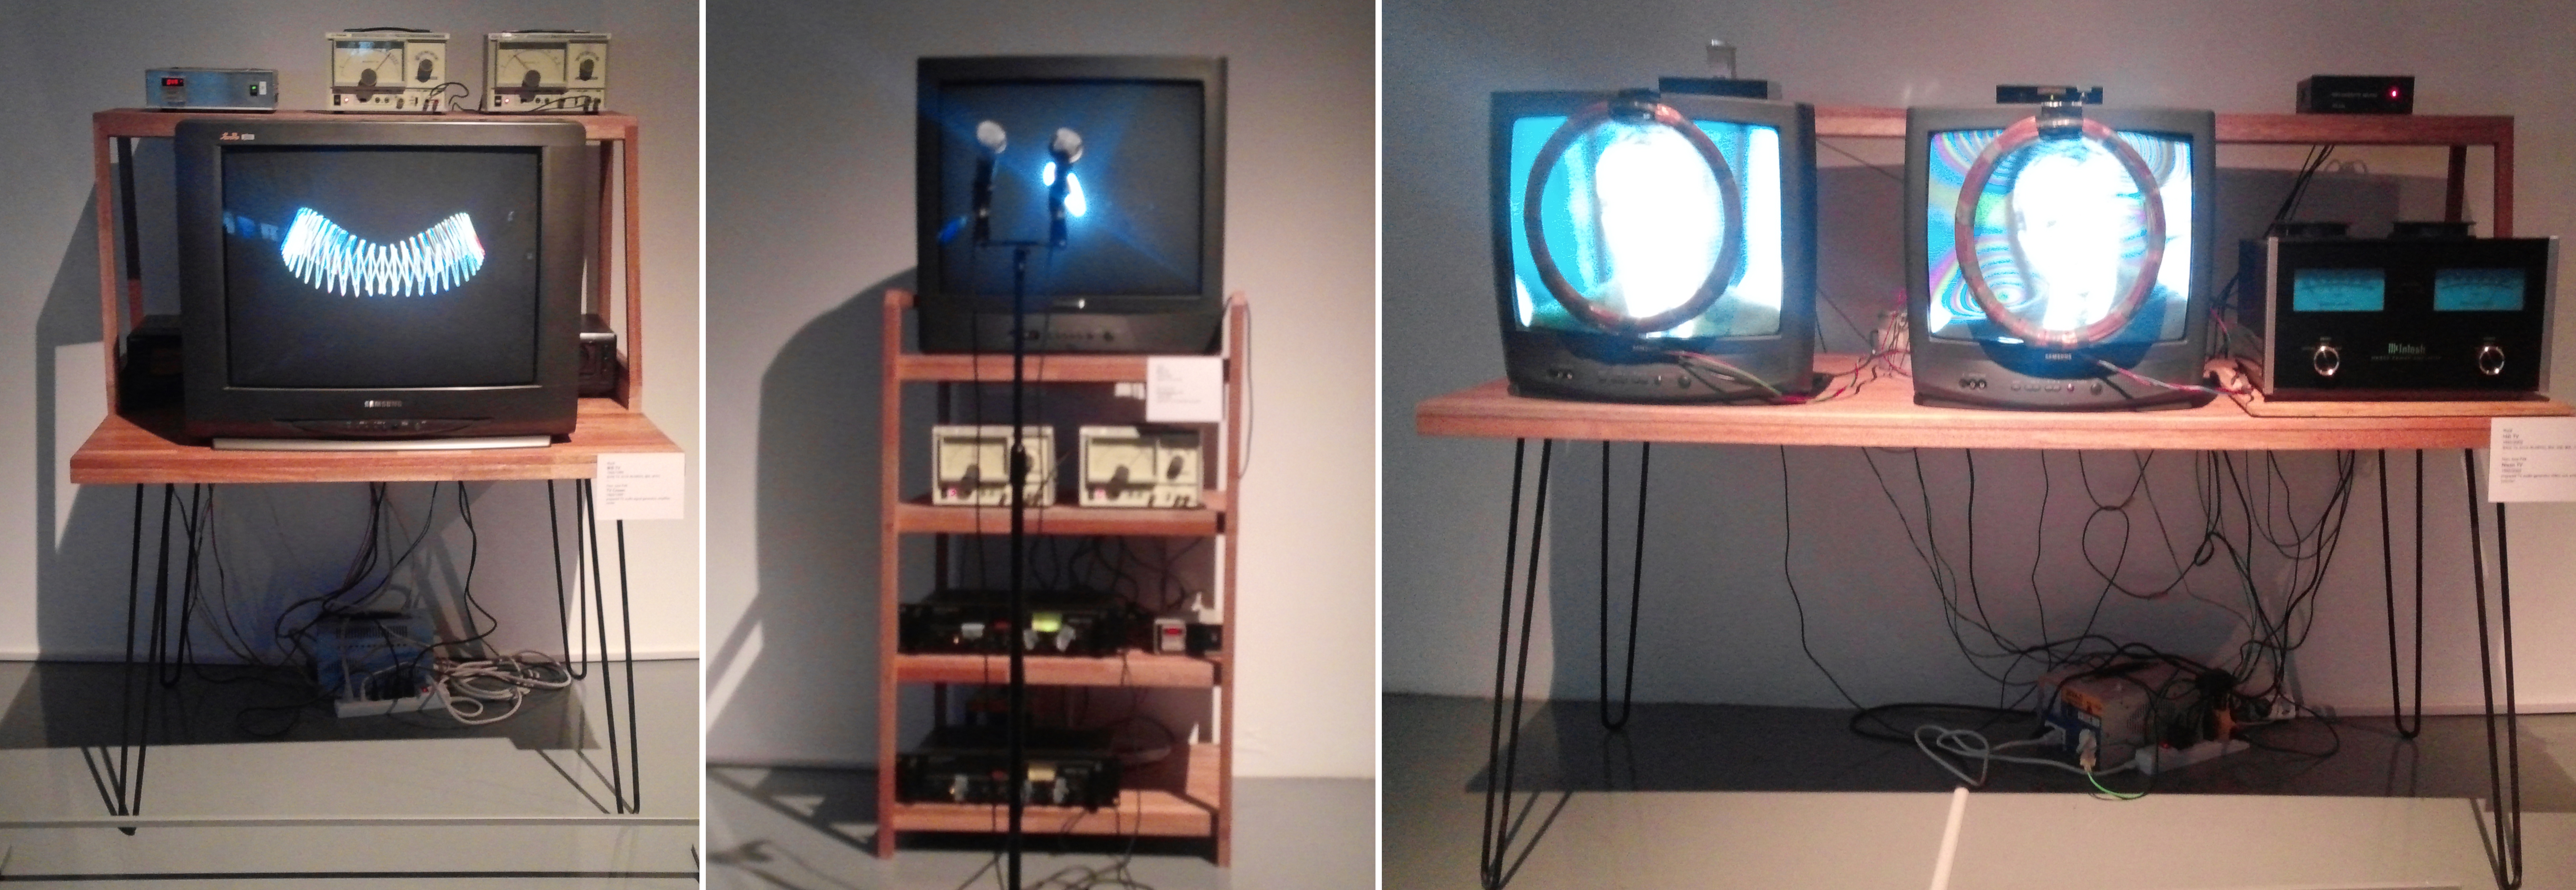 백남준 作 ‘왕관 TV’(왼쪽), ‘참여 TV’(가운데), ’닉슨 TV’(오른쪽)